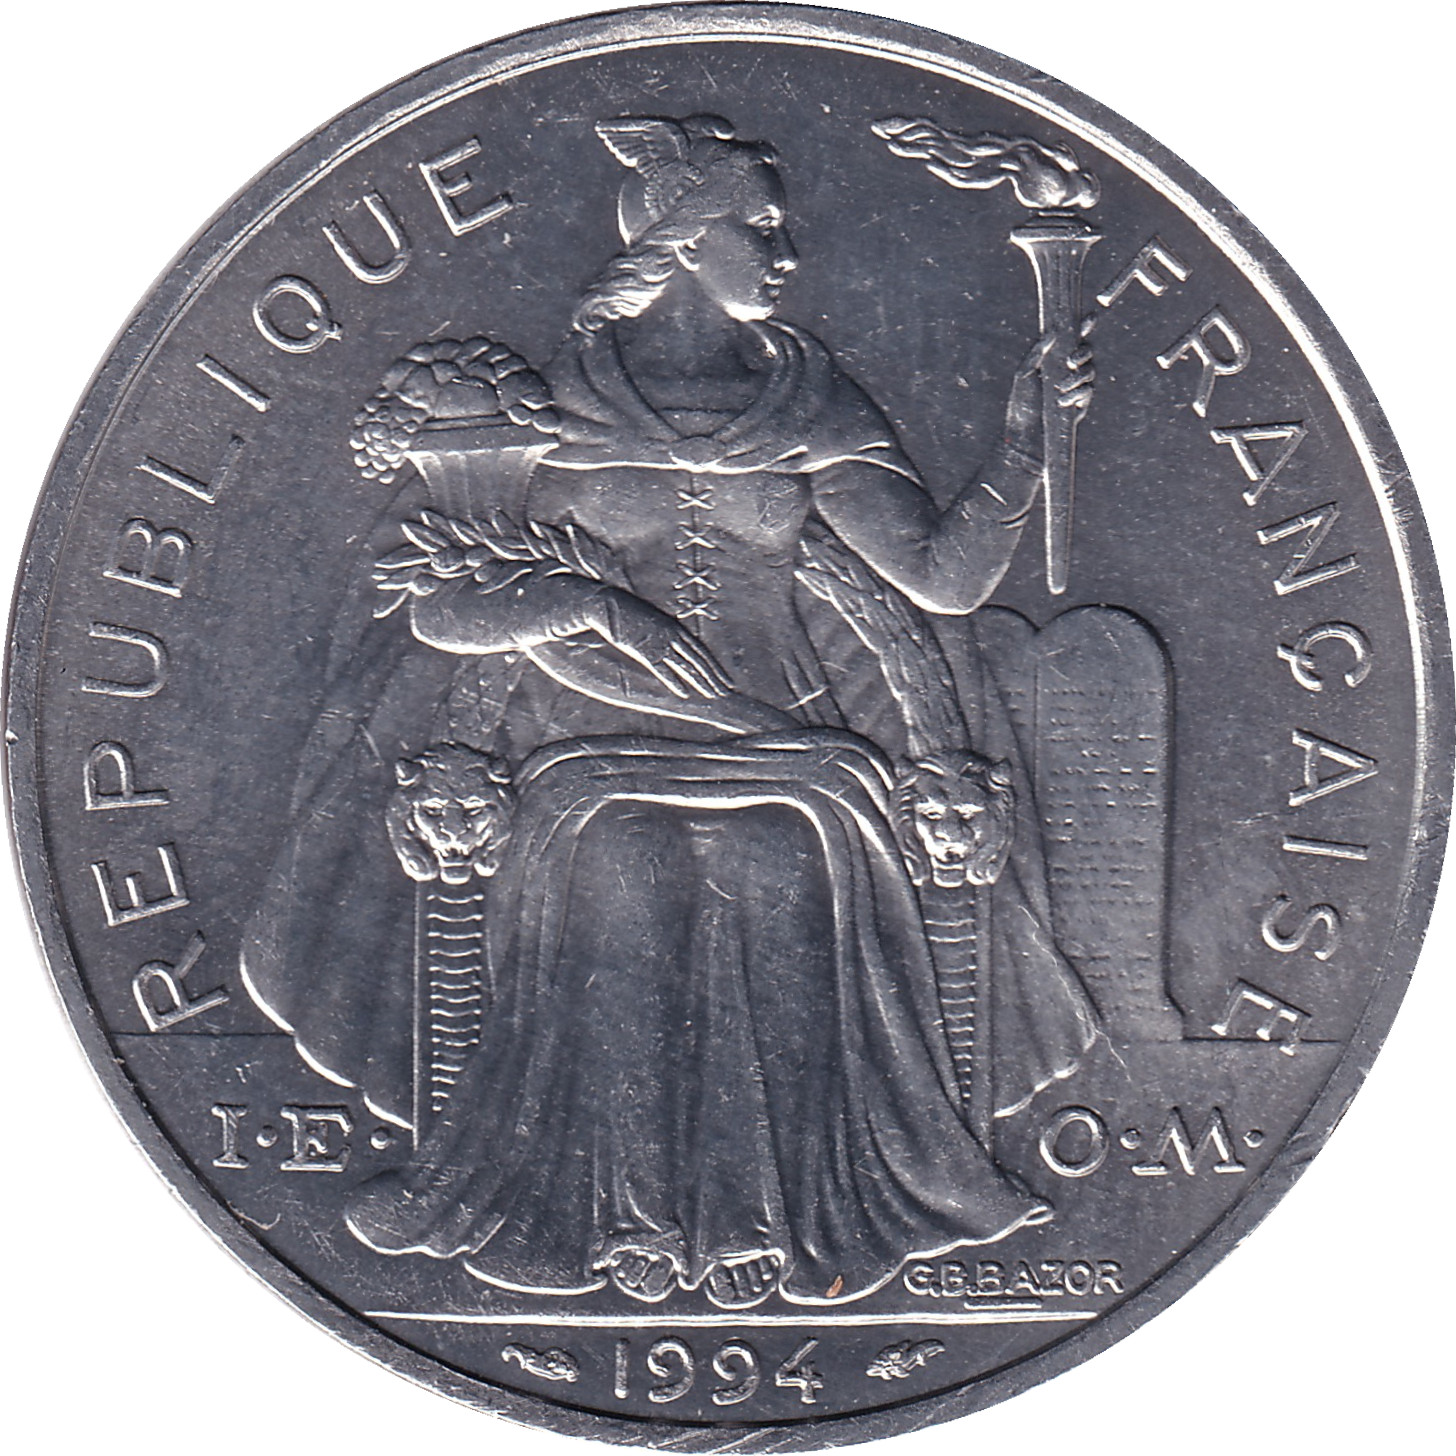 5 francs - Kagu